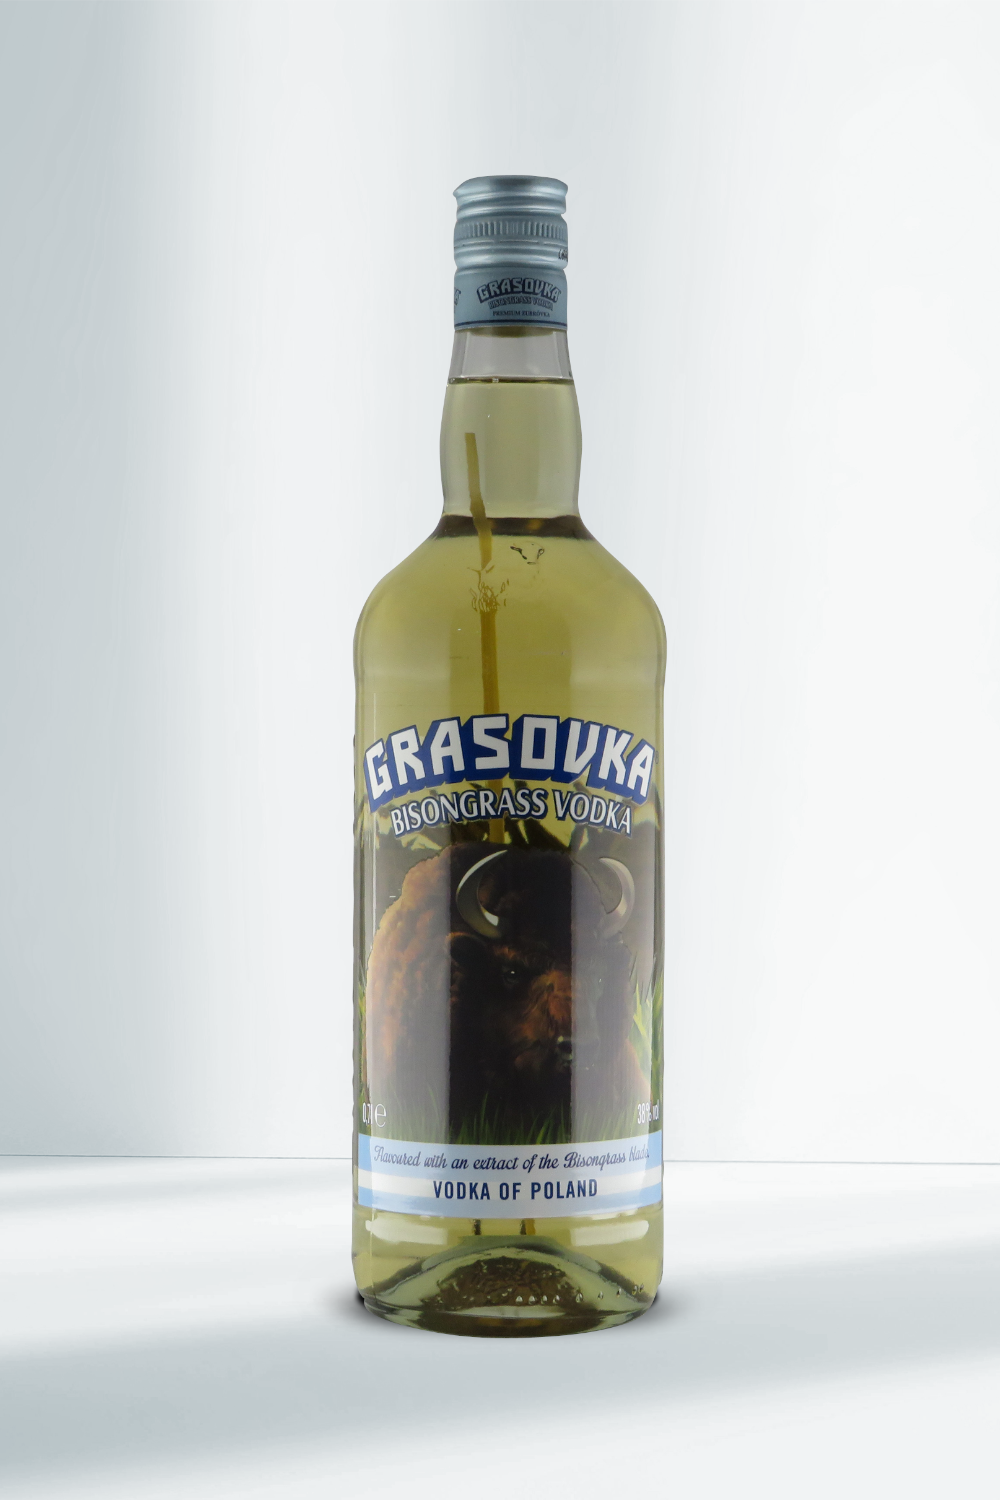 Bisongrass I Vodka Grasovka 0,7l 38% Beverage-Shop